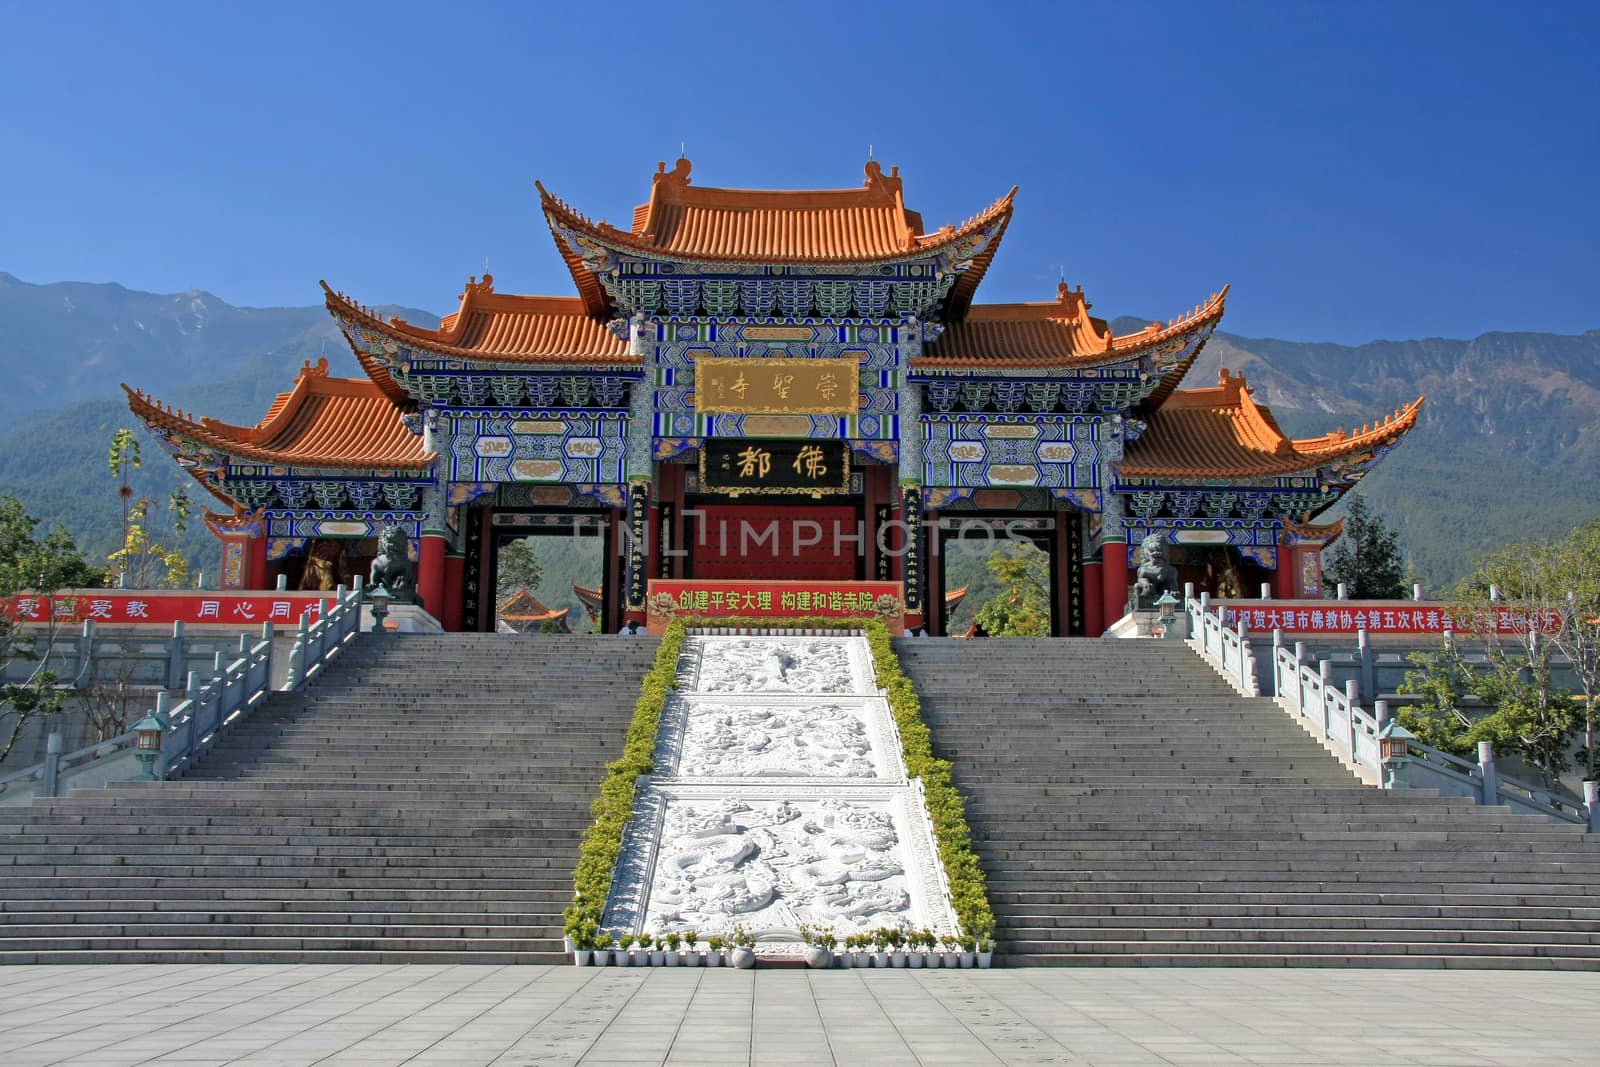 Main gate of Chongsheng temple (The Three Pagodas temple), Dali, China,